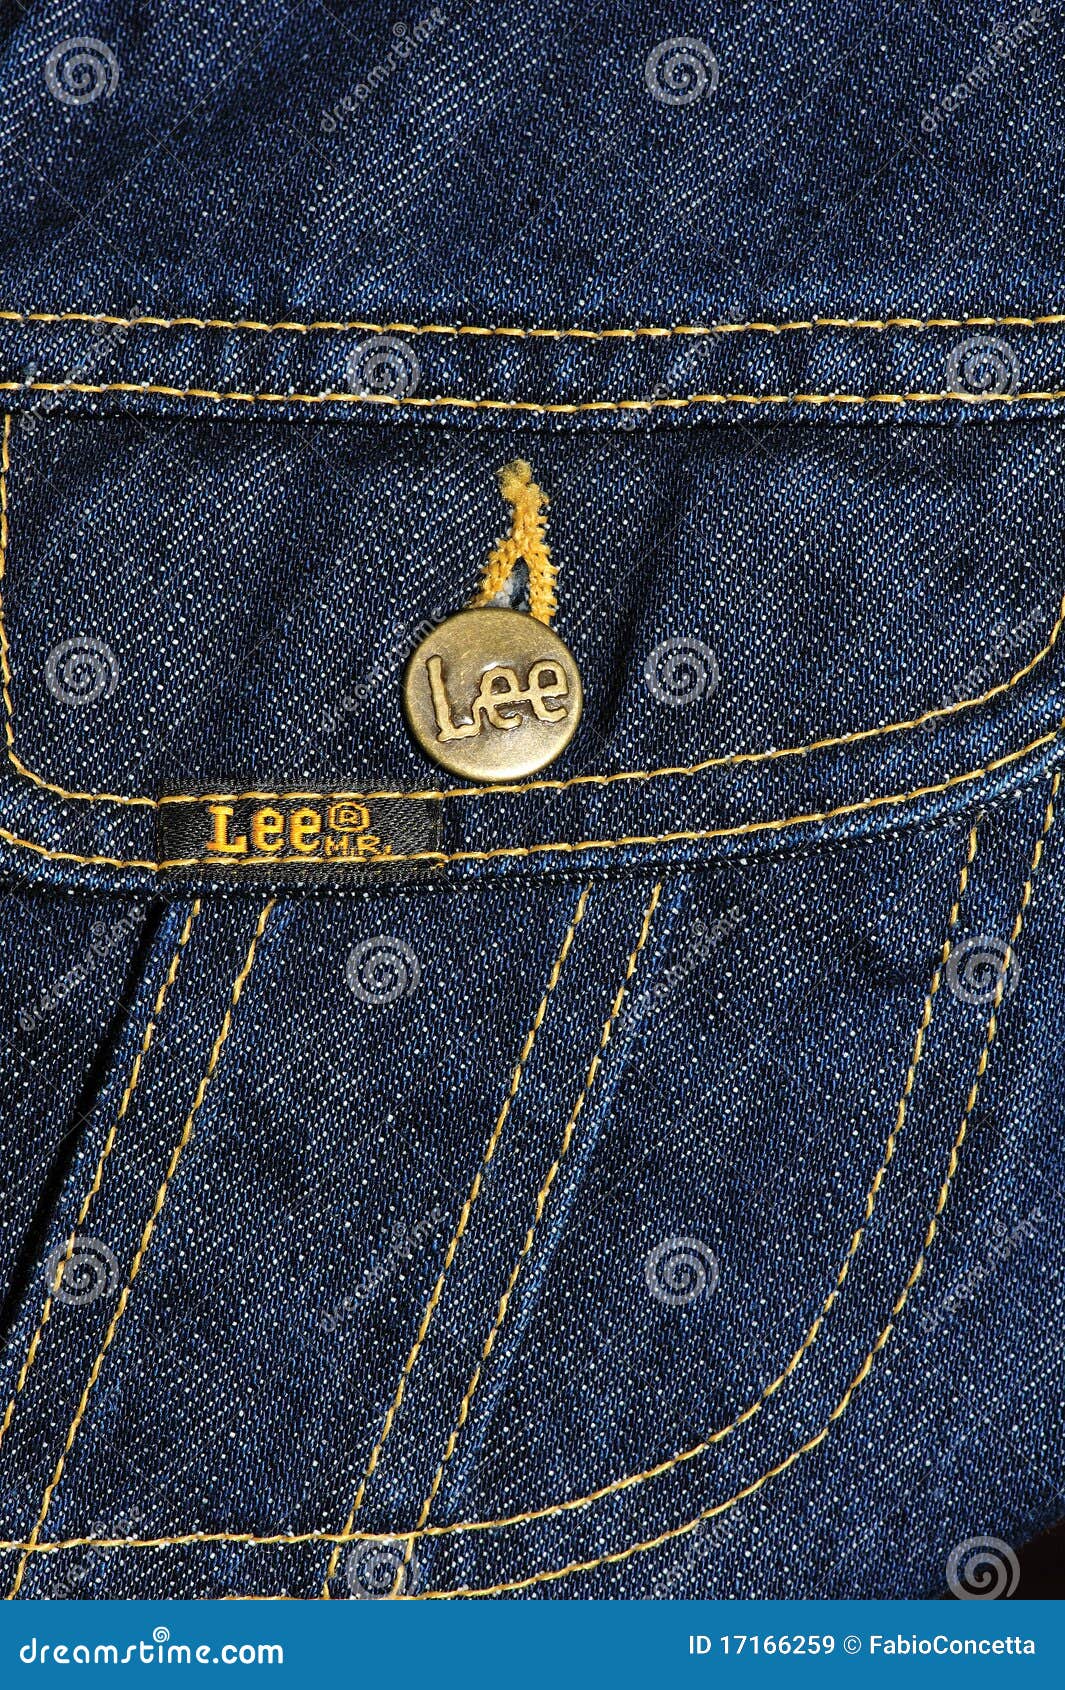 Lee Jeans X Alife 101 Regular Fit Denim Jacket in Blue for Men | Lyst